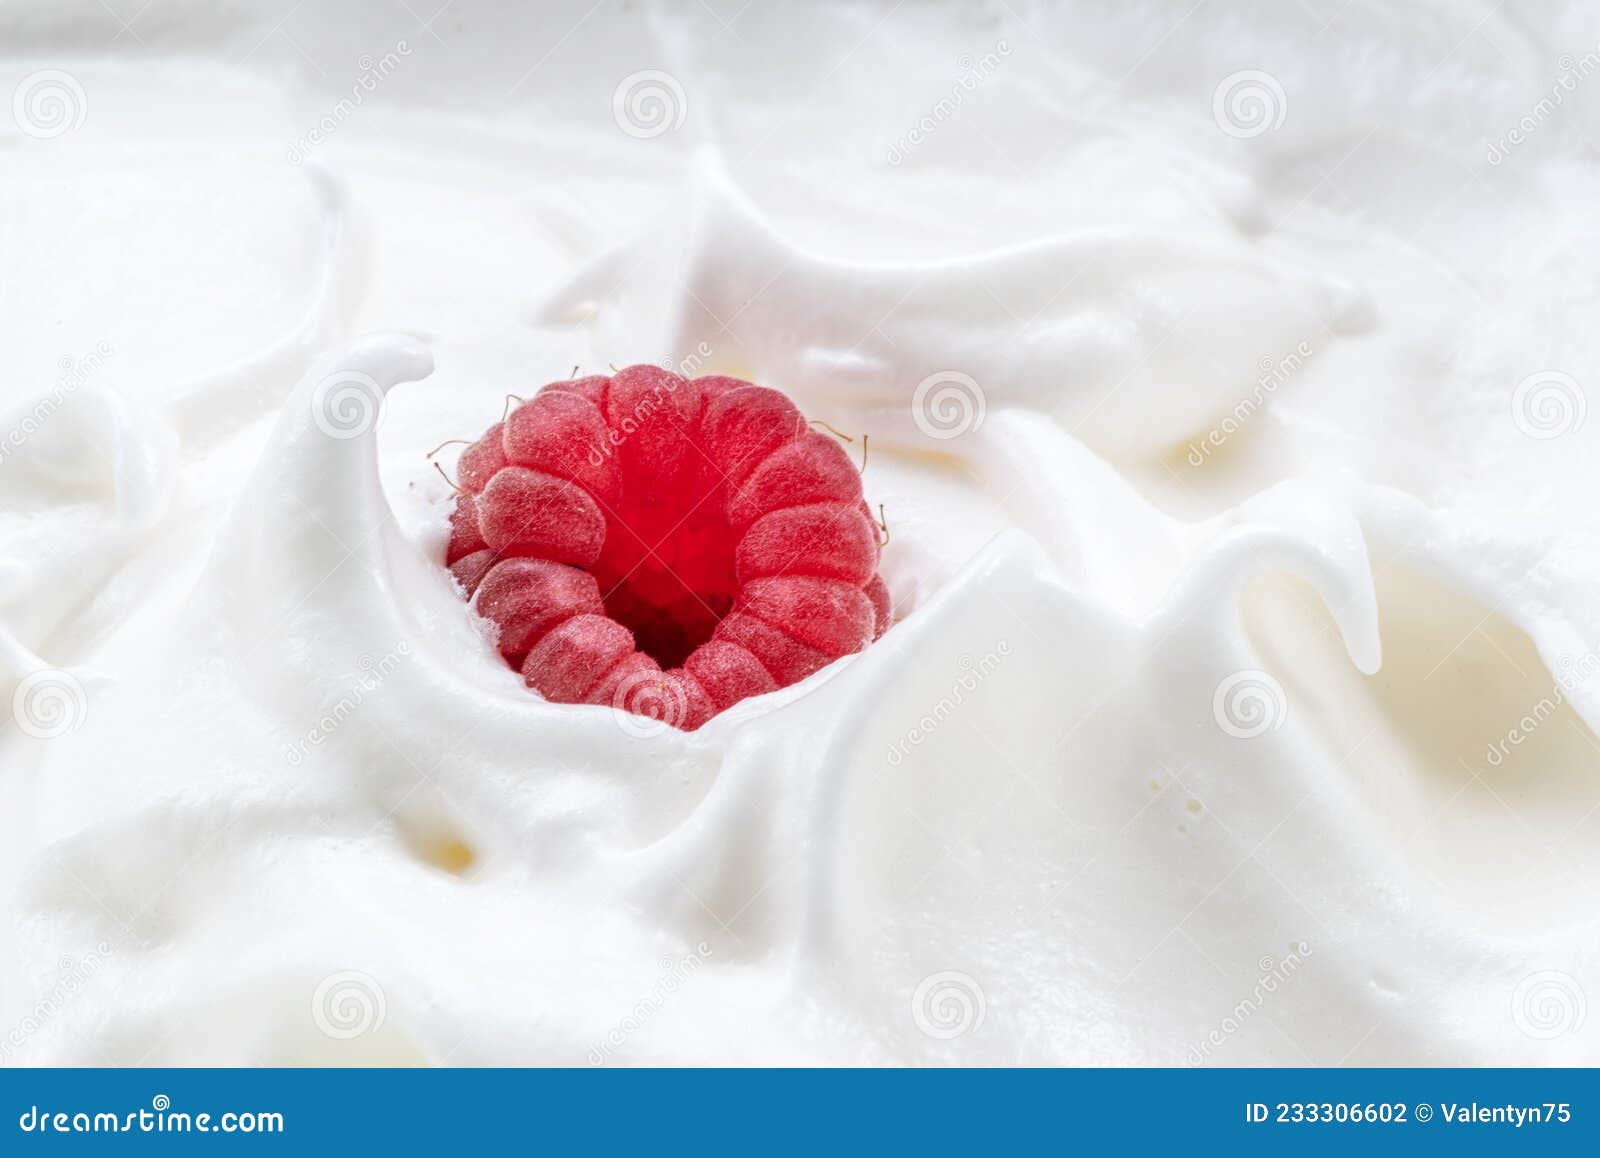 草莓奶昔的做法_【图解】草莓奶昔怎么做如何做好吃_草莓奶昔家常做法大全_兰姨_豆果美食